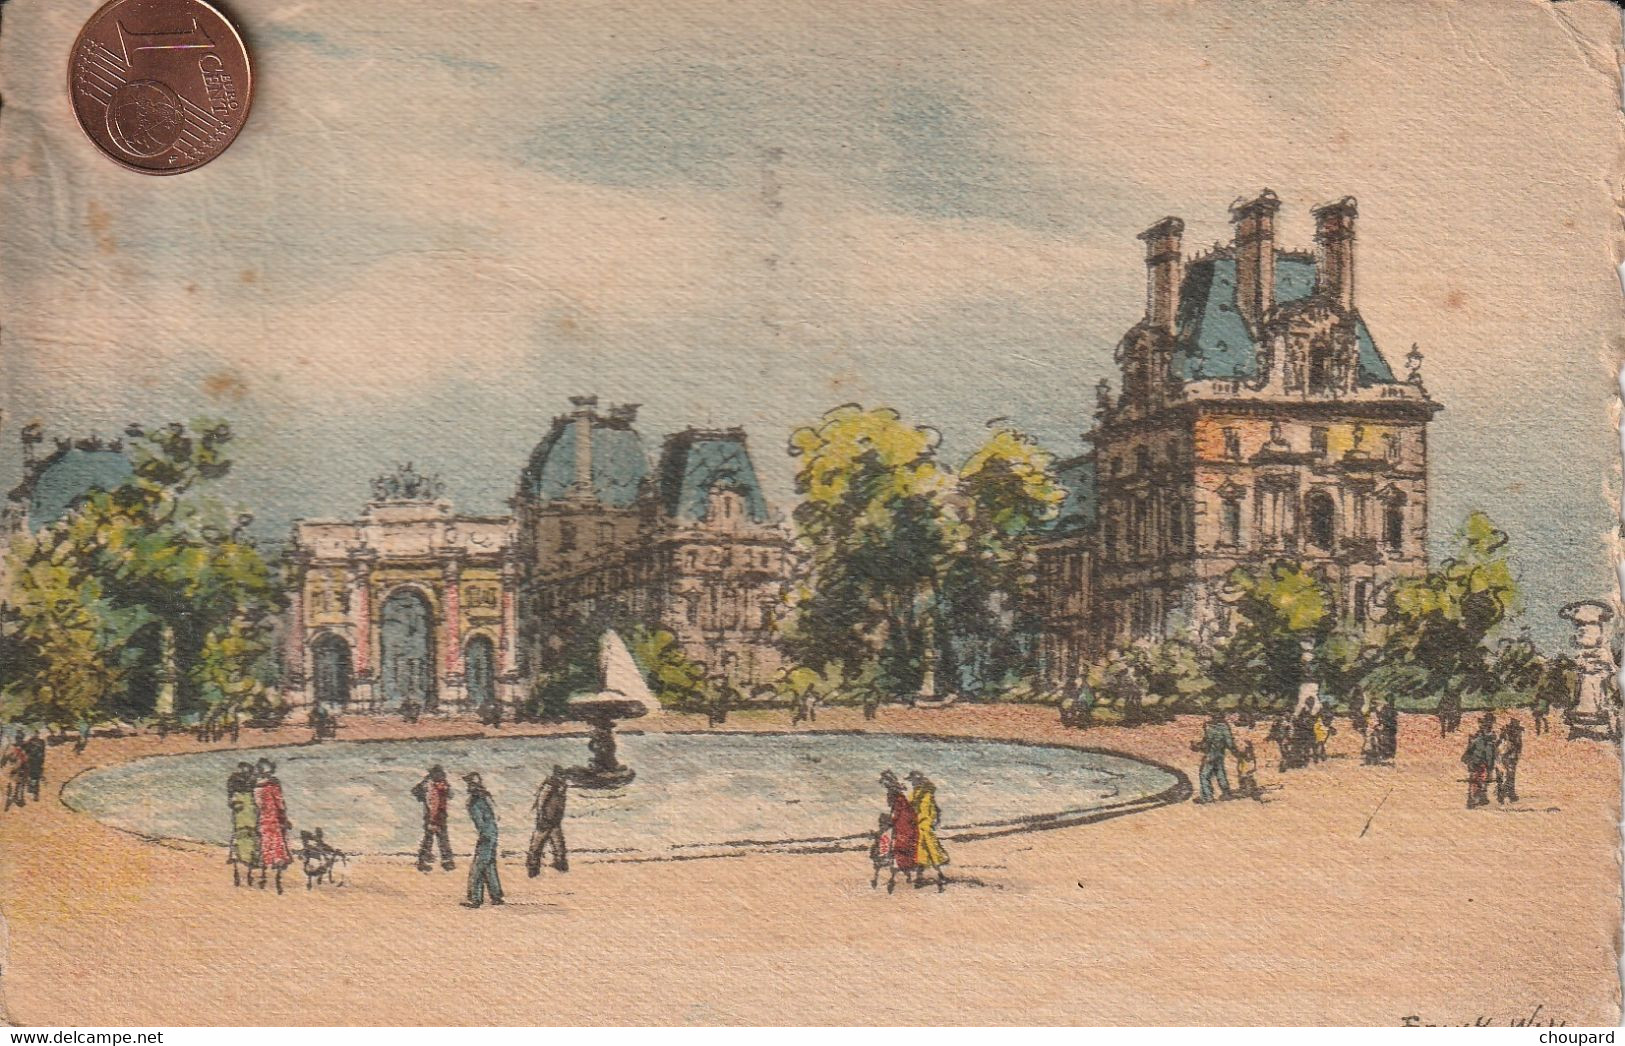 75 - Carte Postale Ancienne De  PARIS  Les Tuileries    Illustrée Par Franck Will - Autres Monuments, édifices